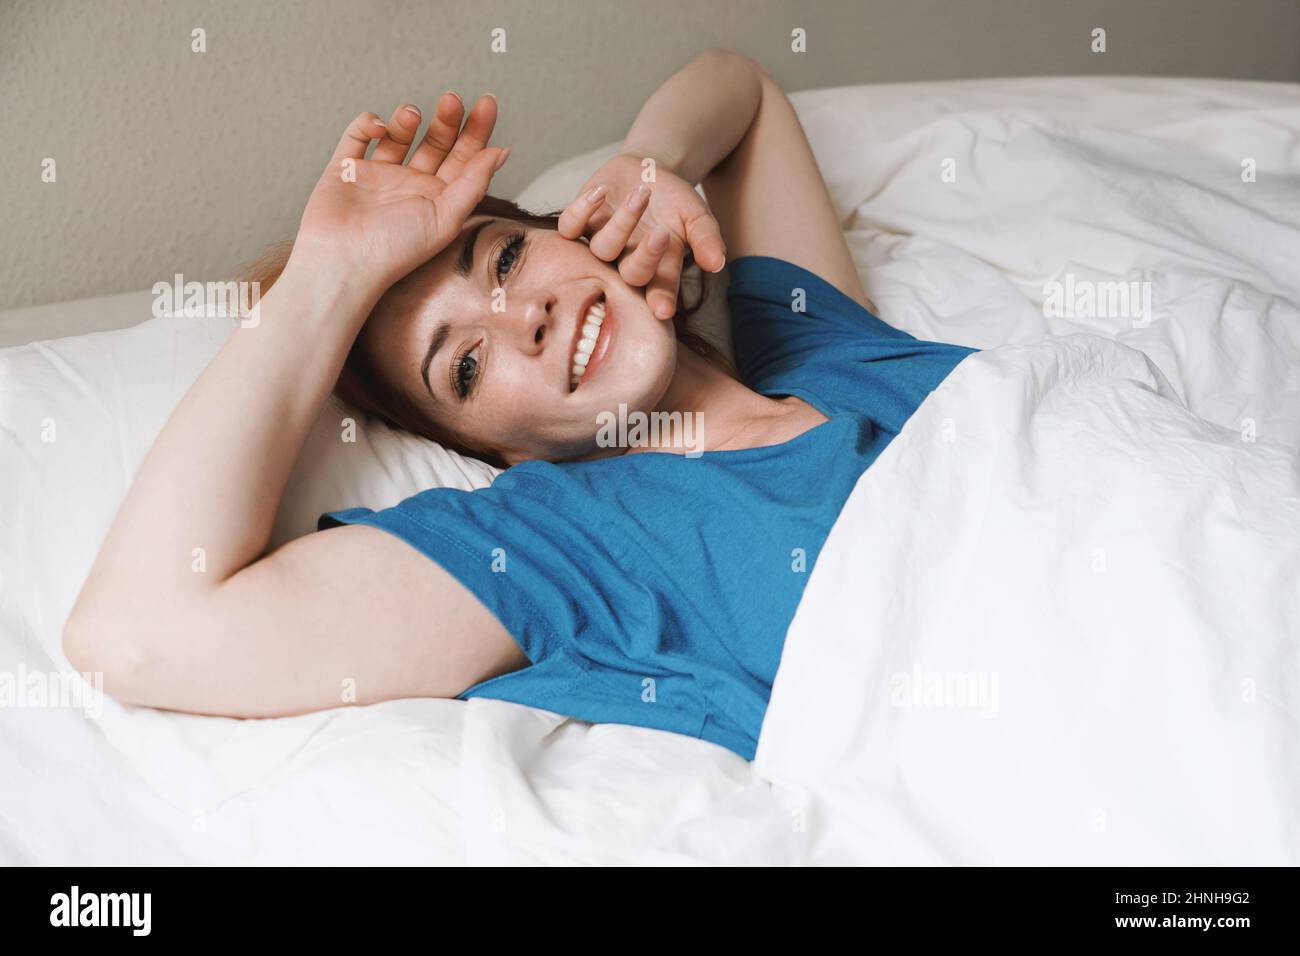 levantarse y brillar - mujer joven descansada en la cama despertando sonriendo Foto de stock